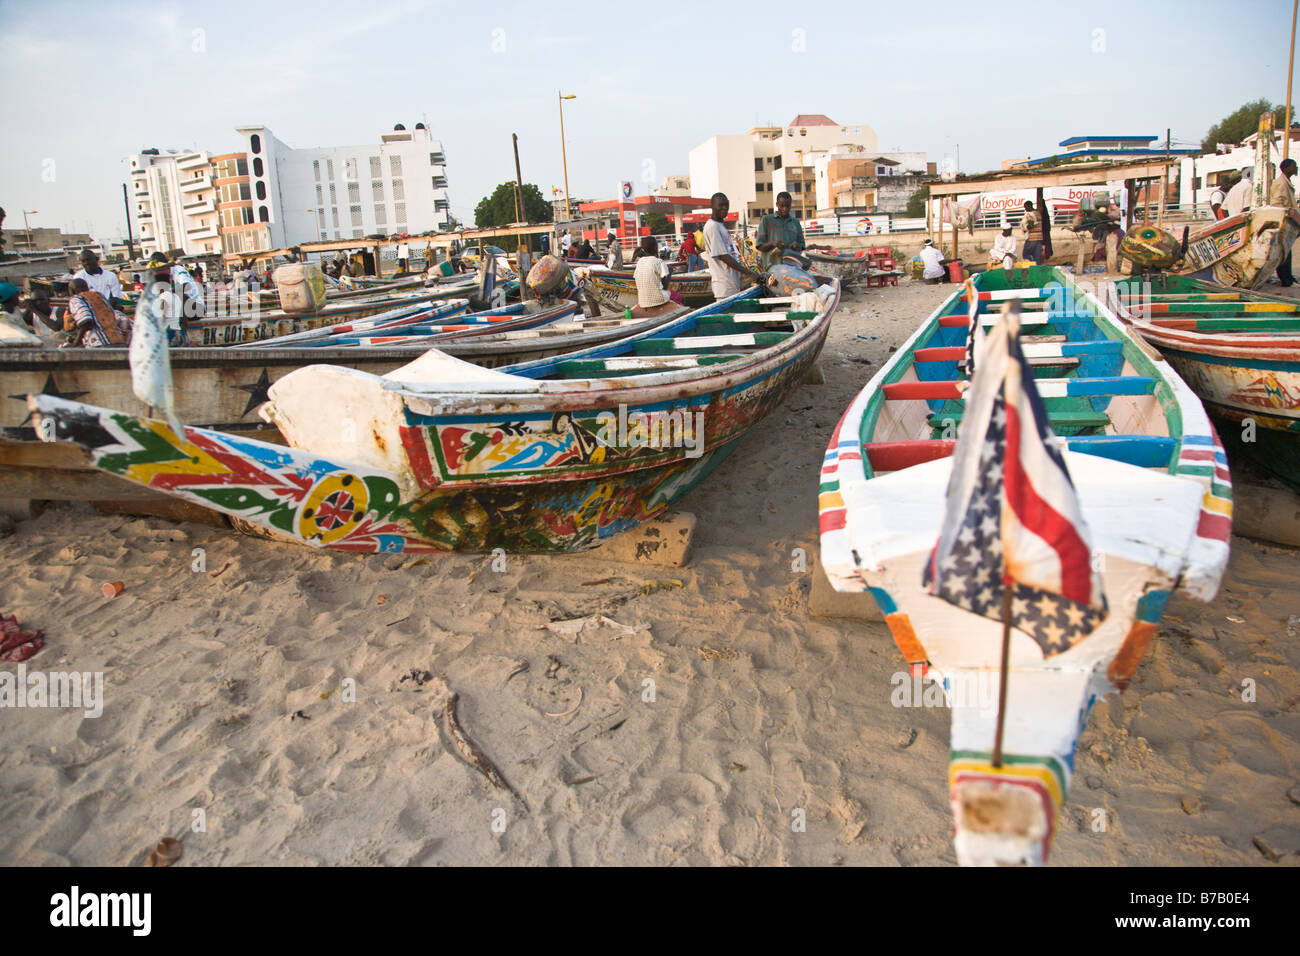 Bunt bemalten Fischerboote säumen den Strand an diesem Fischmarkt in Dakar, Senegal. Stockfoto